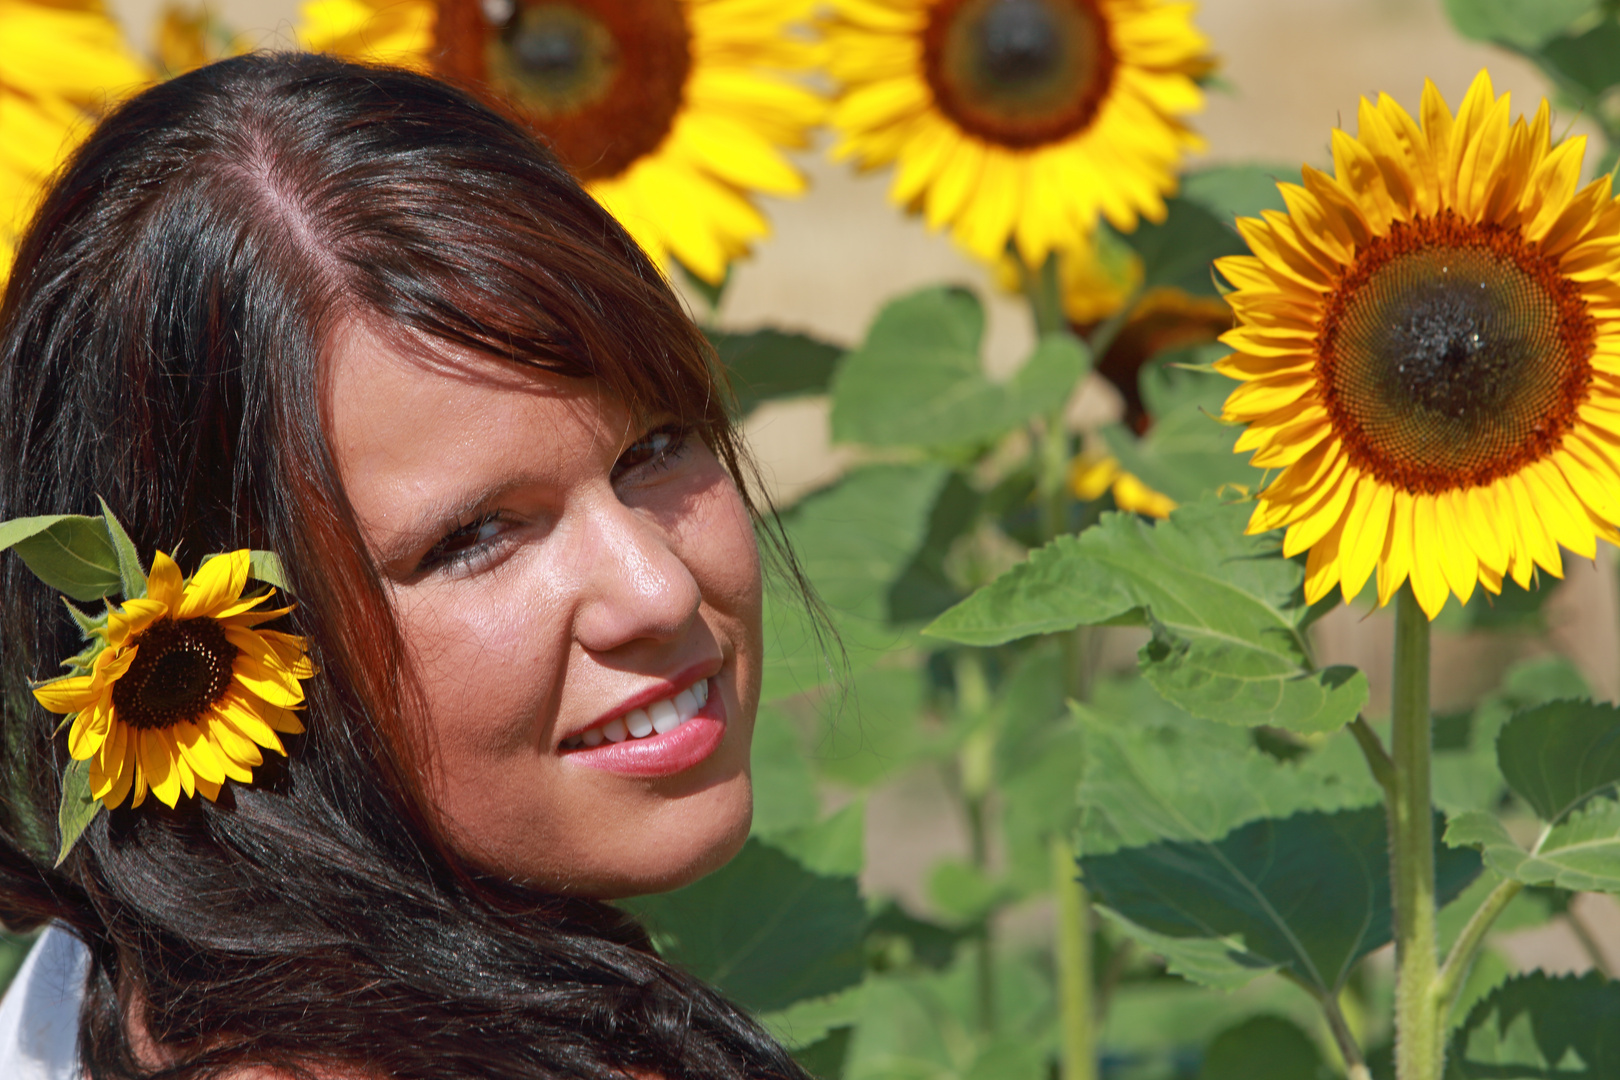 Sabine with Sunflowers